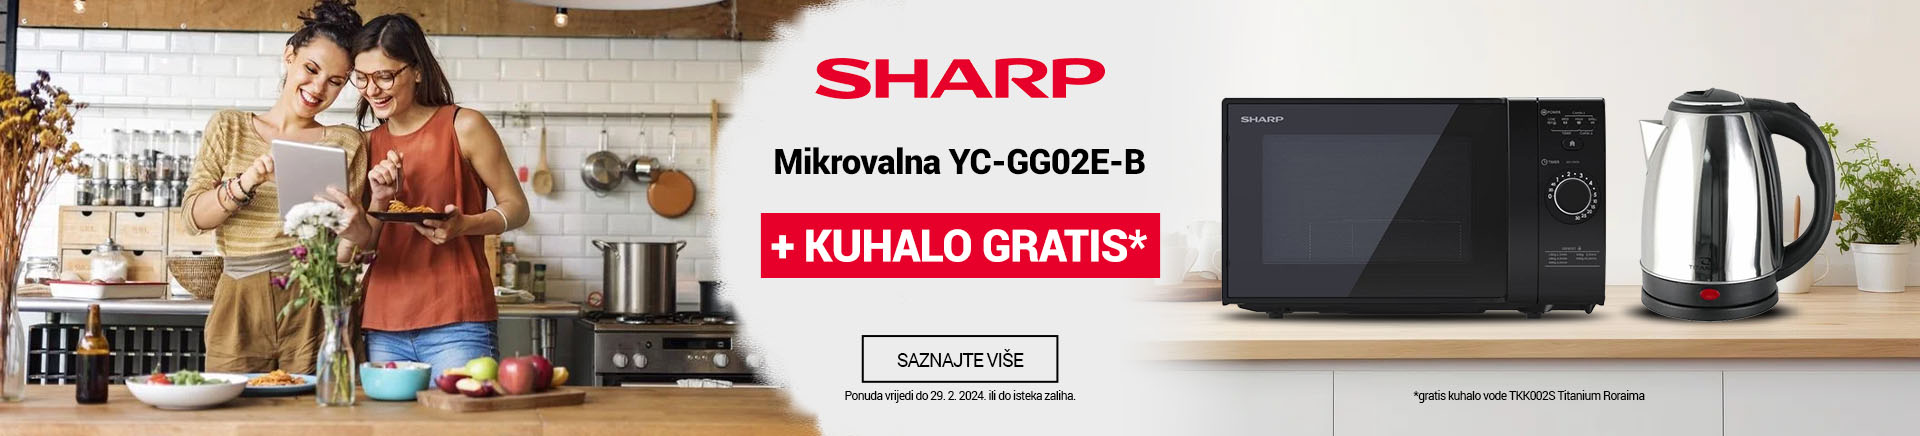 HR Sharp mikrovalna YC-GG02E-B + Kuhalo GRATIS MOBILE za APP 760x872.jpg